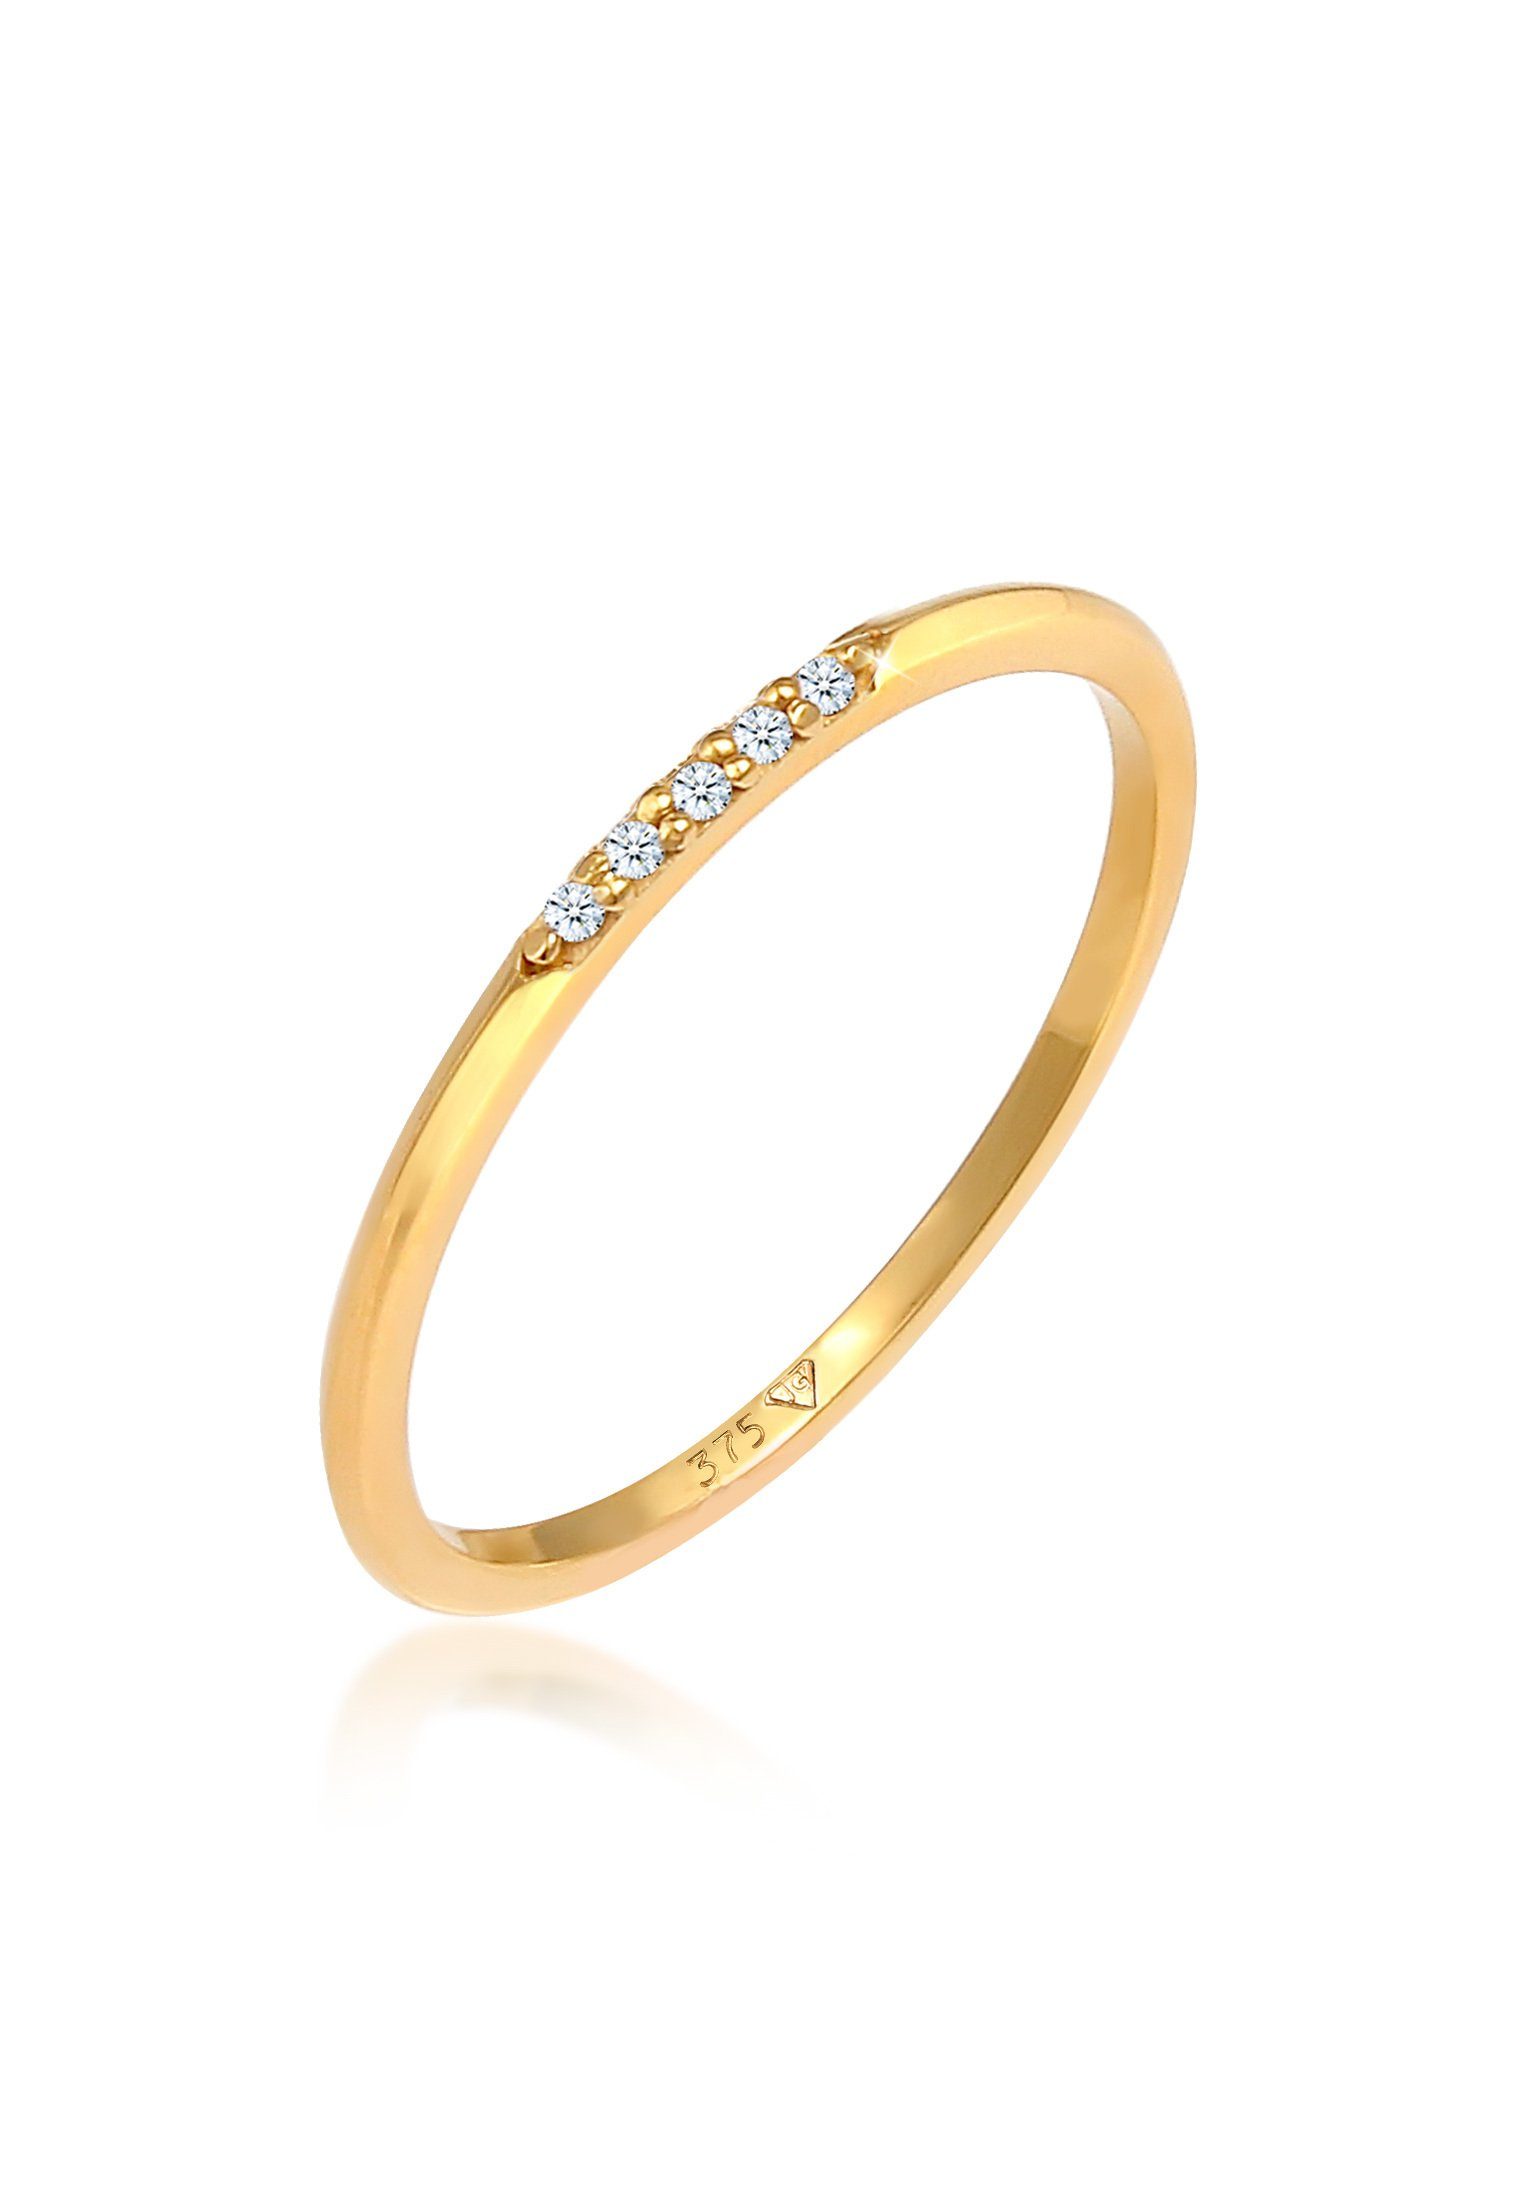 Damen Schmuck Elli DIAMONDS Diamantring Bandring Verlobung Diamanten Elegant Fein 375 Gold, Microsetting